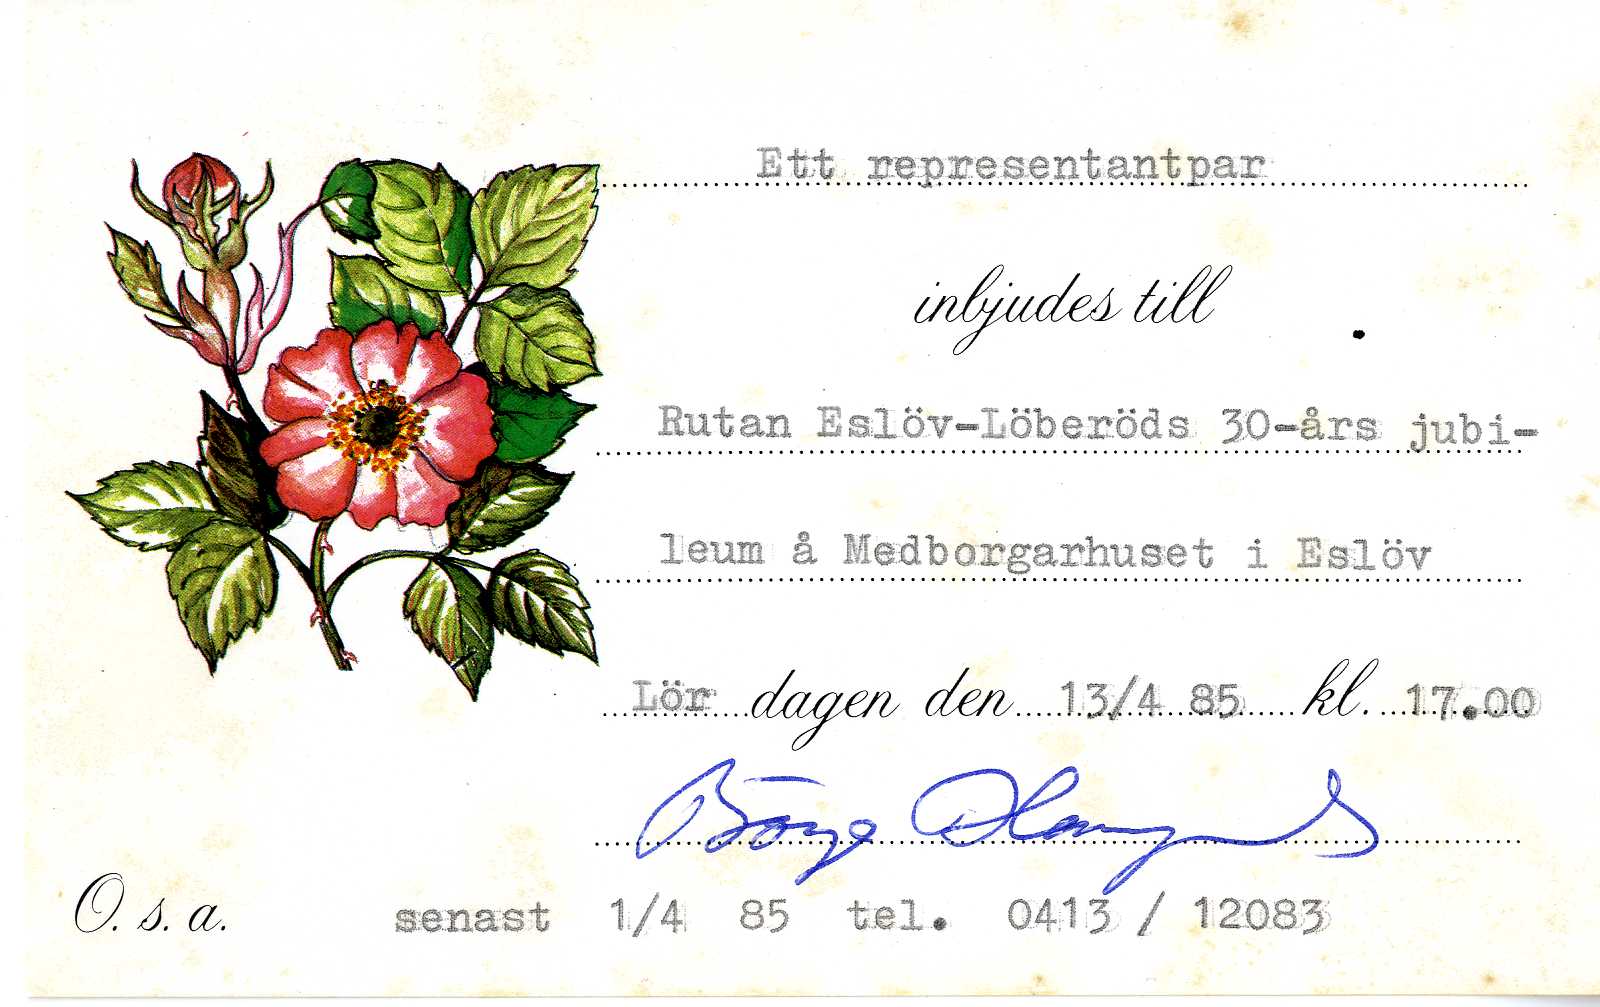 Inbjudningskort från Gammaldansföreningen Rutan Eslöv-Löberöd, för ett representantpar att närvara vid deras 30-årsjubileum 1985. 